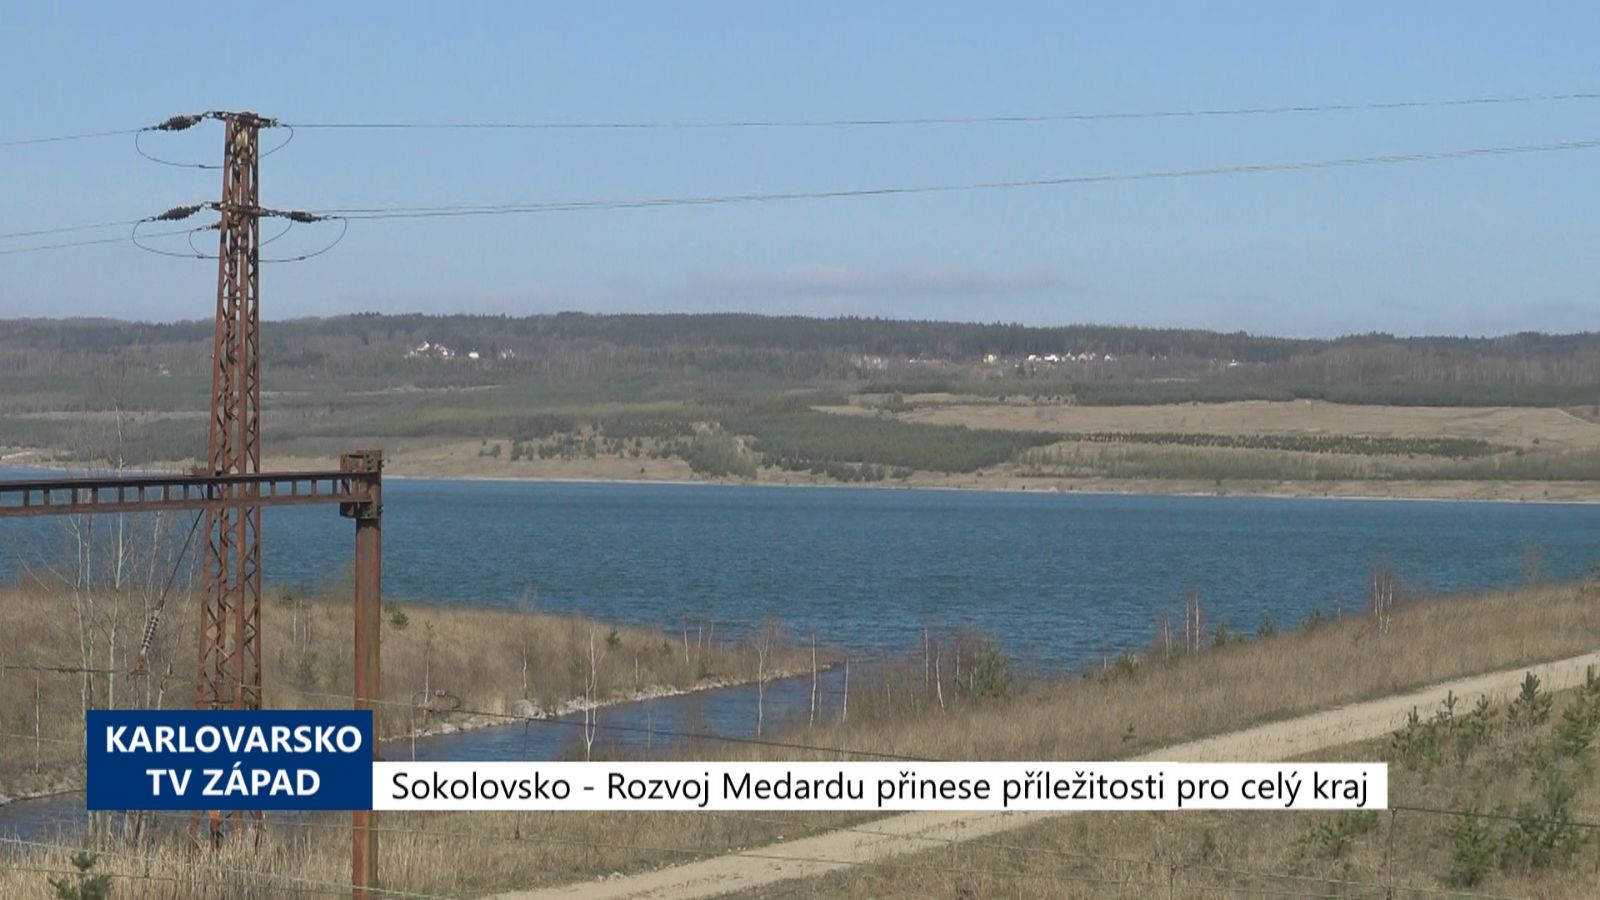 Sokolovsko: Rozvoj Medardu přinese příležitosti pro celý kraj (TV Západ)